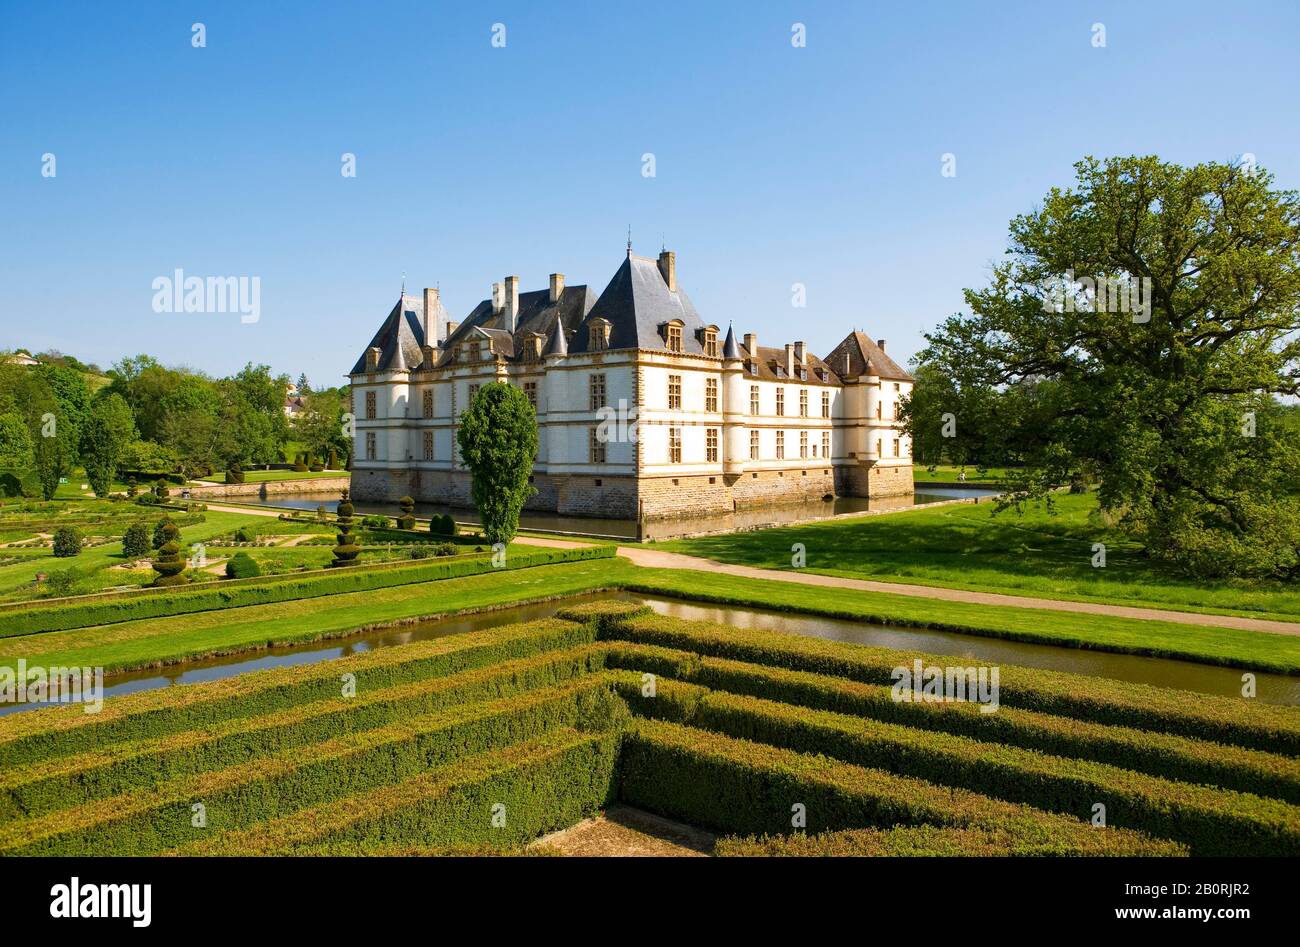 Château aux ruines, labyrinthe de buis et château de Cormatin, Cormatin, département Saone et Loire, Bourgogne, France Banque D'Images